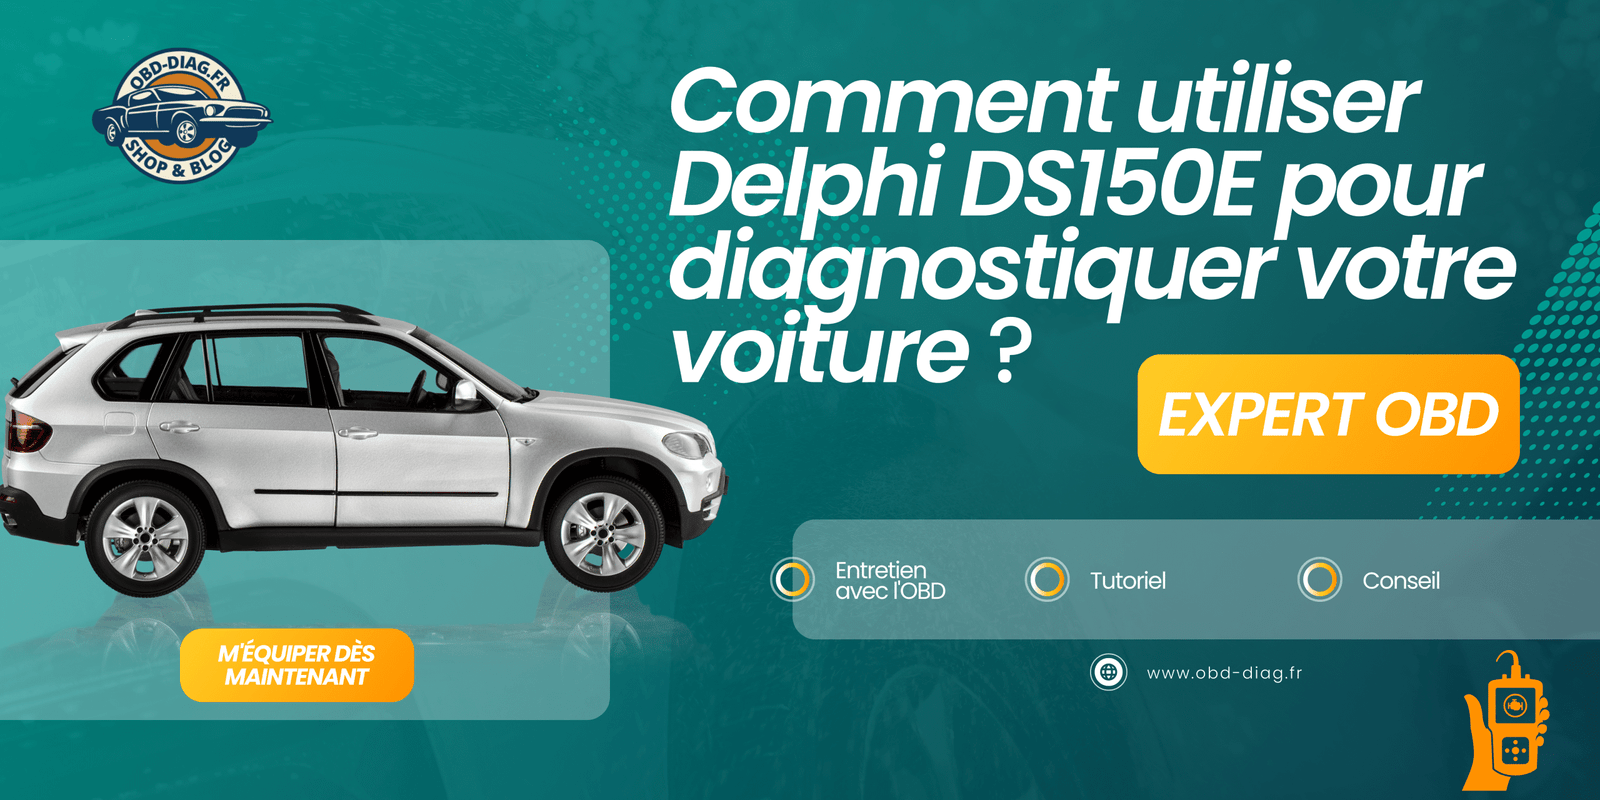 Comment utiliser Delphi DS150E pour diagnostiquer votre voiture ?